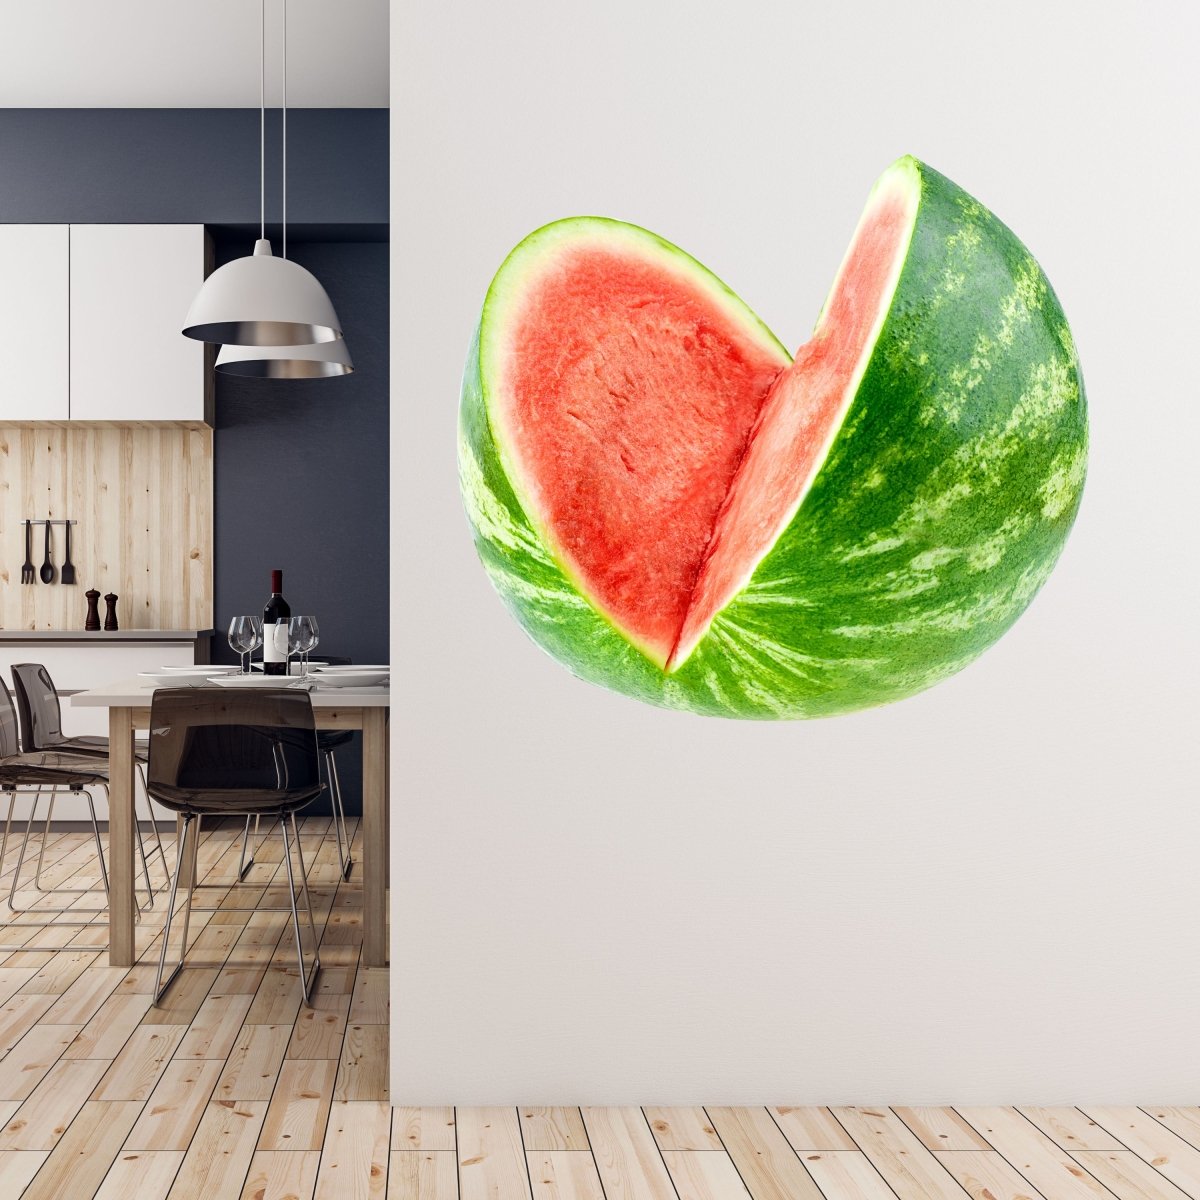 Wandsticker aufgeschnittene Wasser-melone, Obst WS00000212 - Bild 5